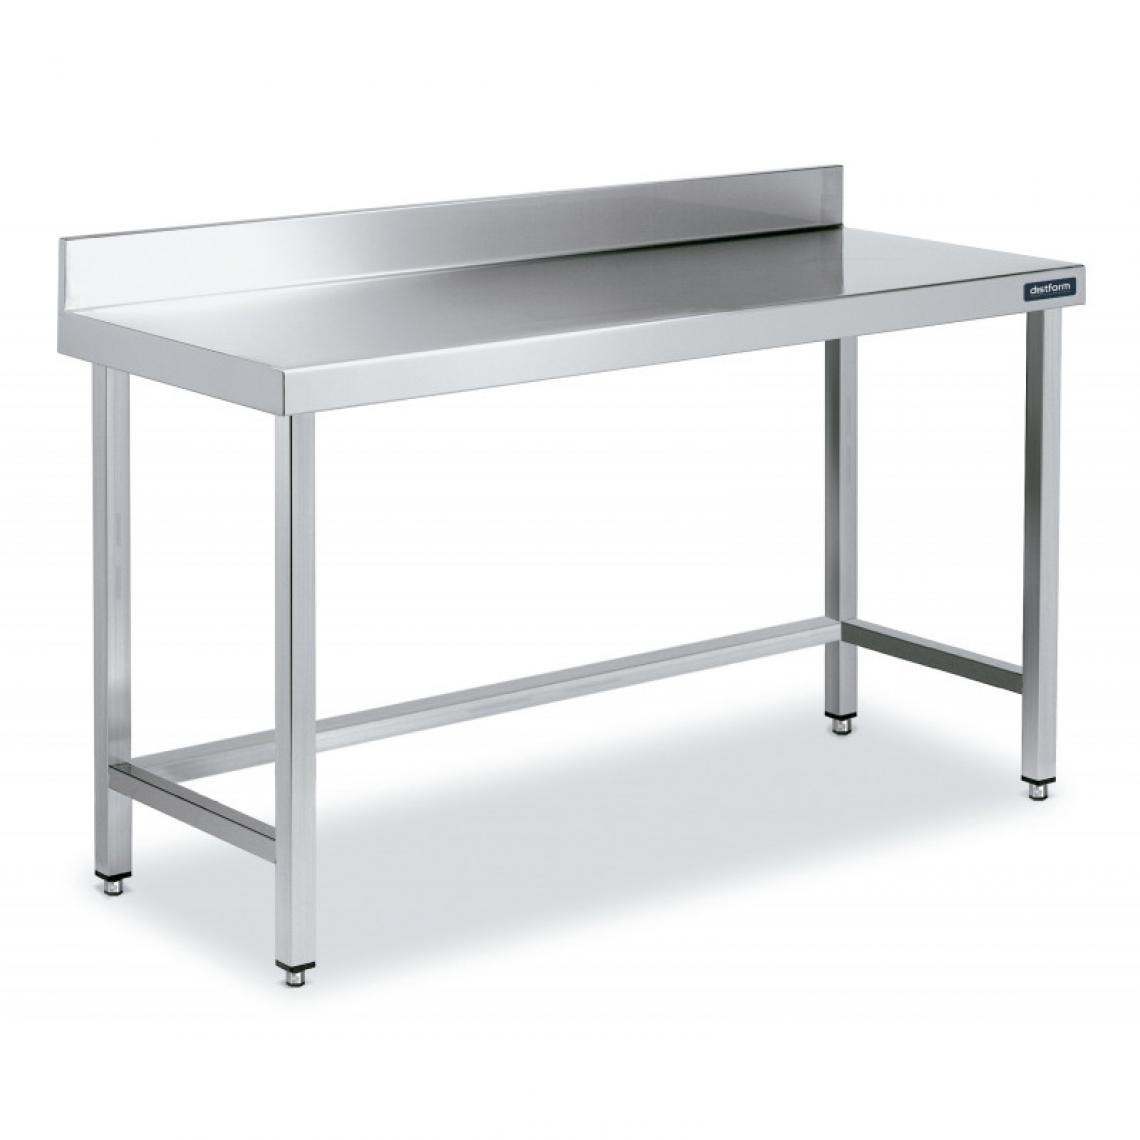 DISTFORM - Table Inox de Travail avec Dosseret Gamme 800 - Distform - Acier inoxydable1800x800 - Tables à manger